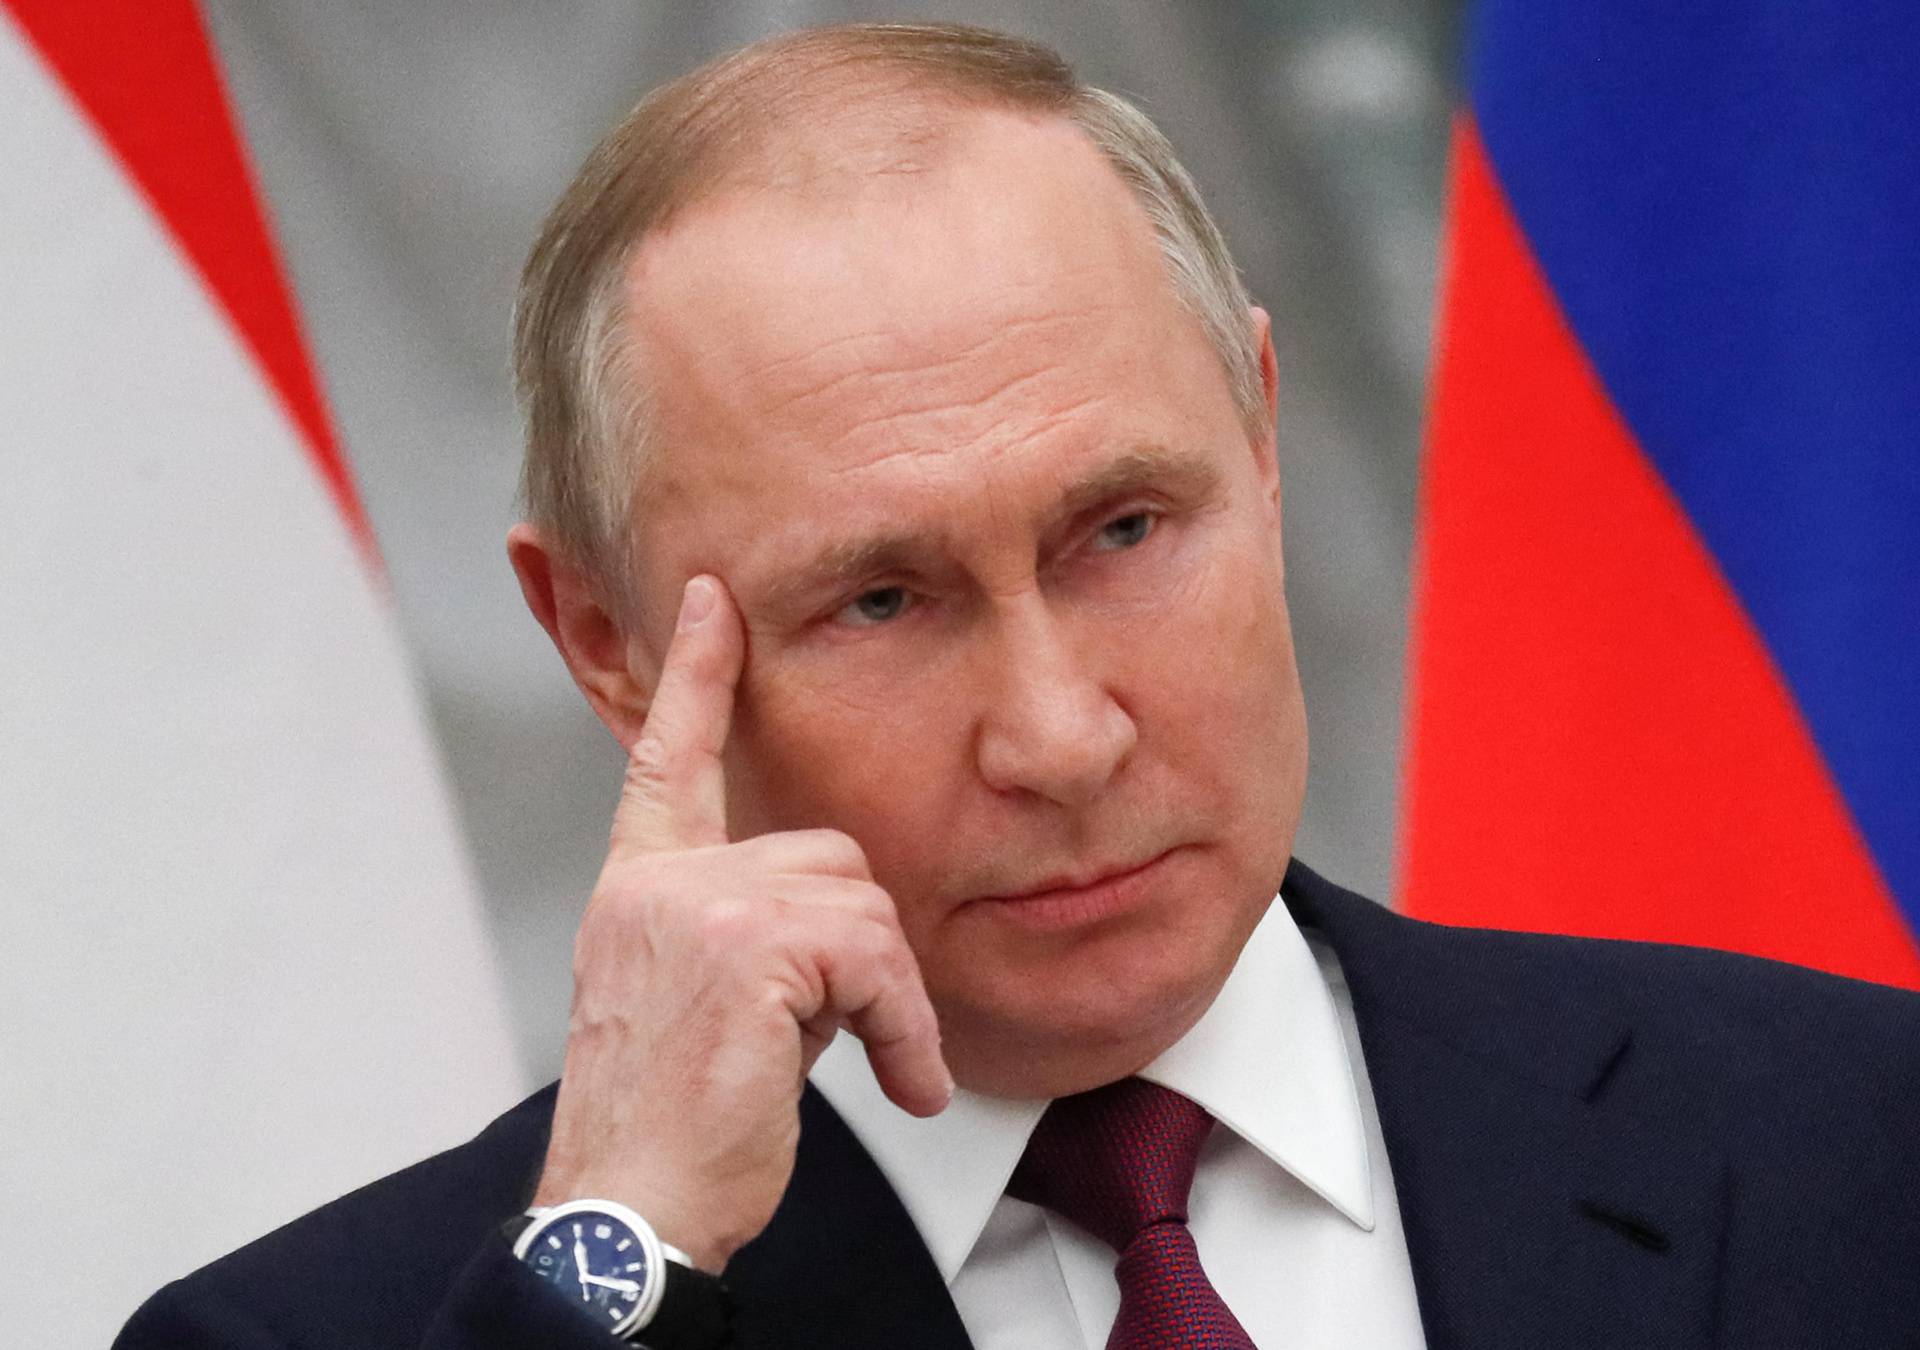 Vladimir Putin oružjem obnavlja sovjetski imperij. I vraća Rusiju u sovjetski mrak i novu izolaciju